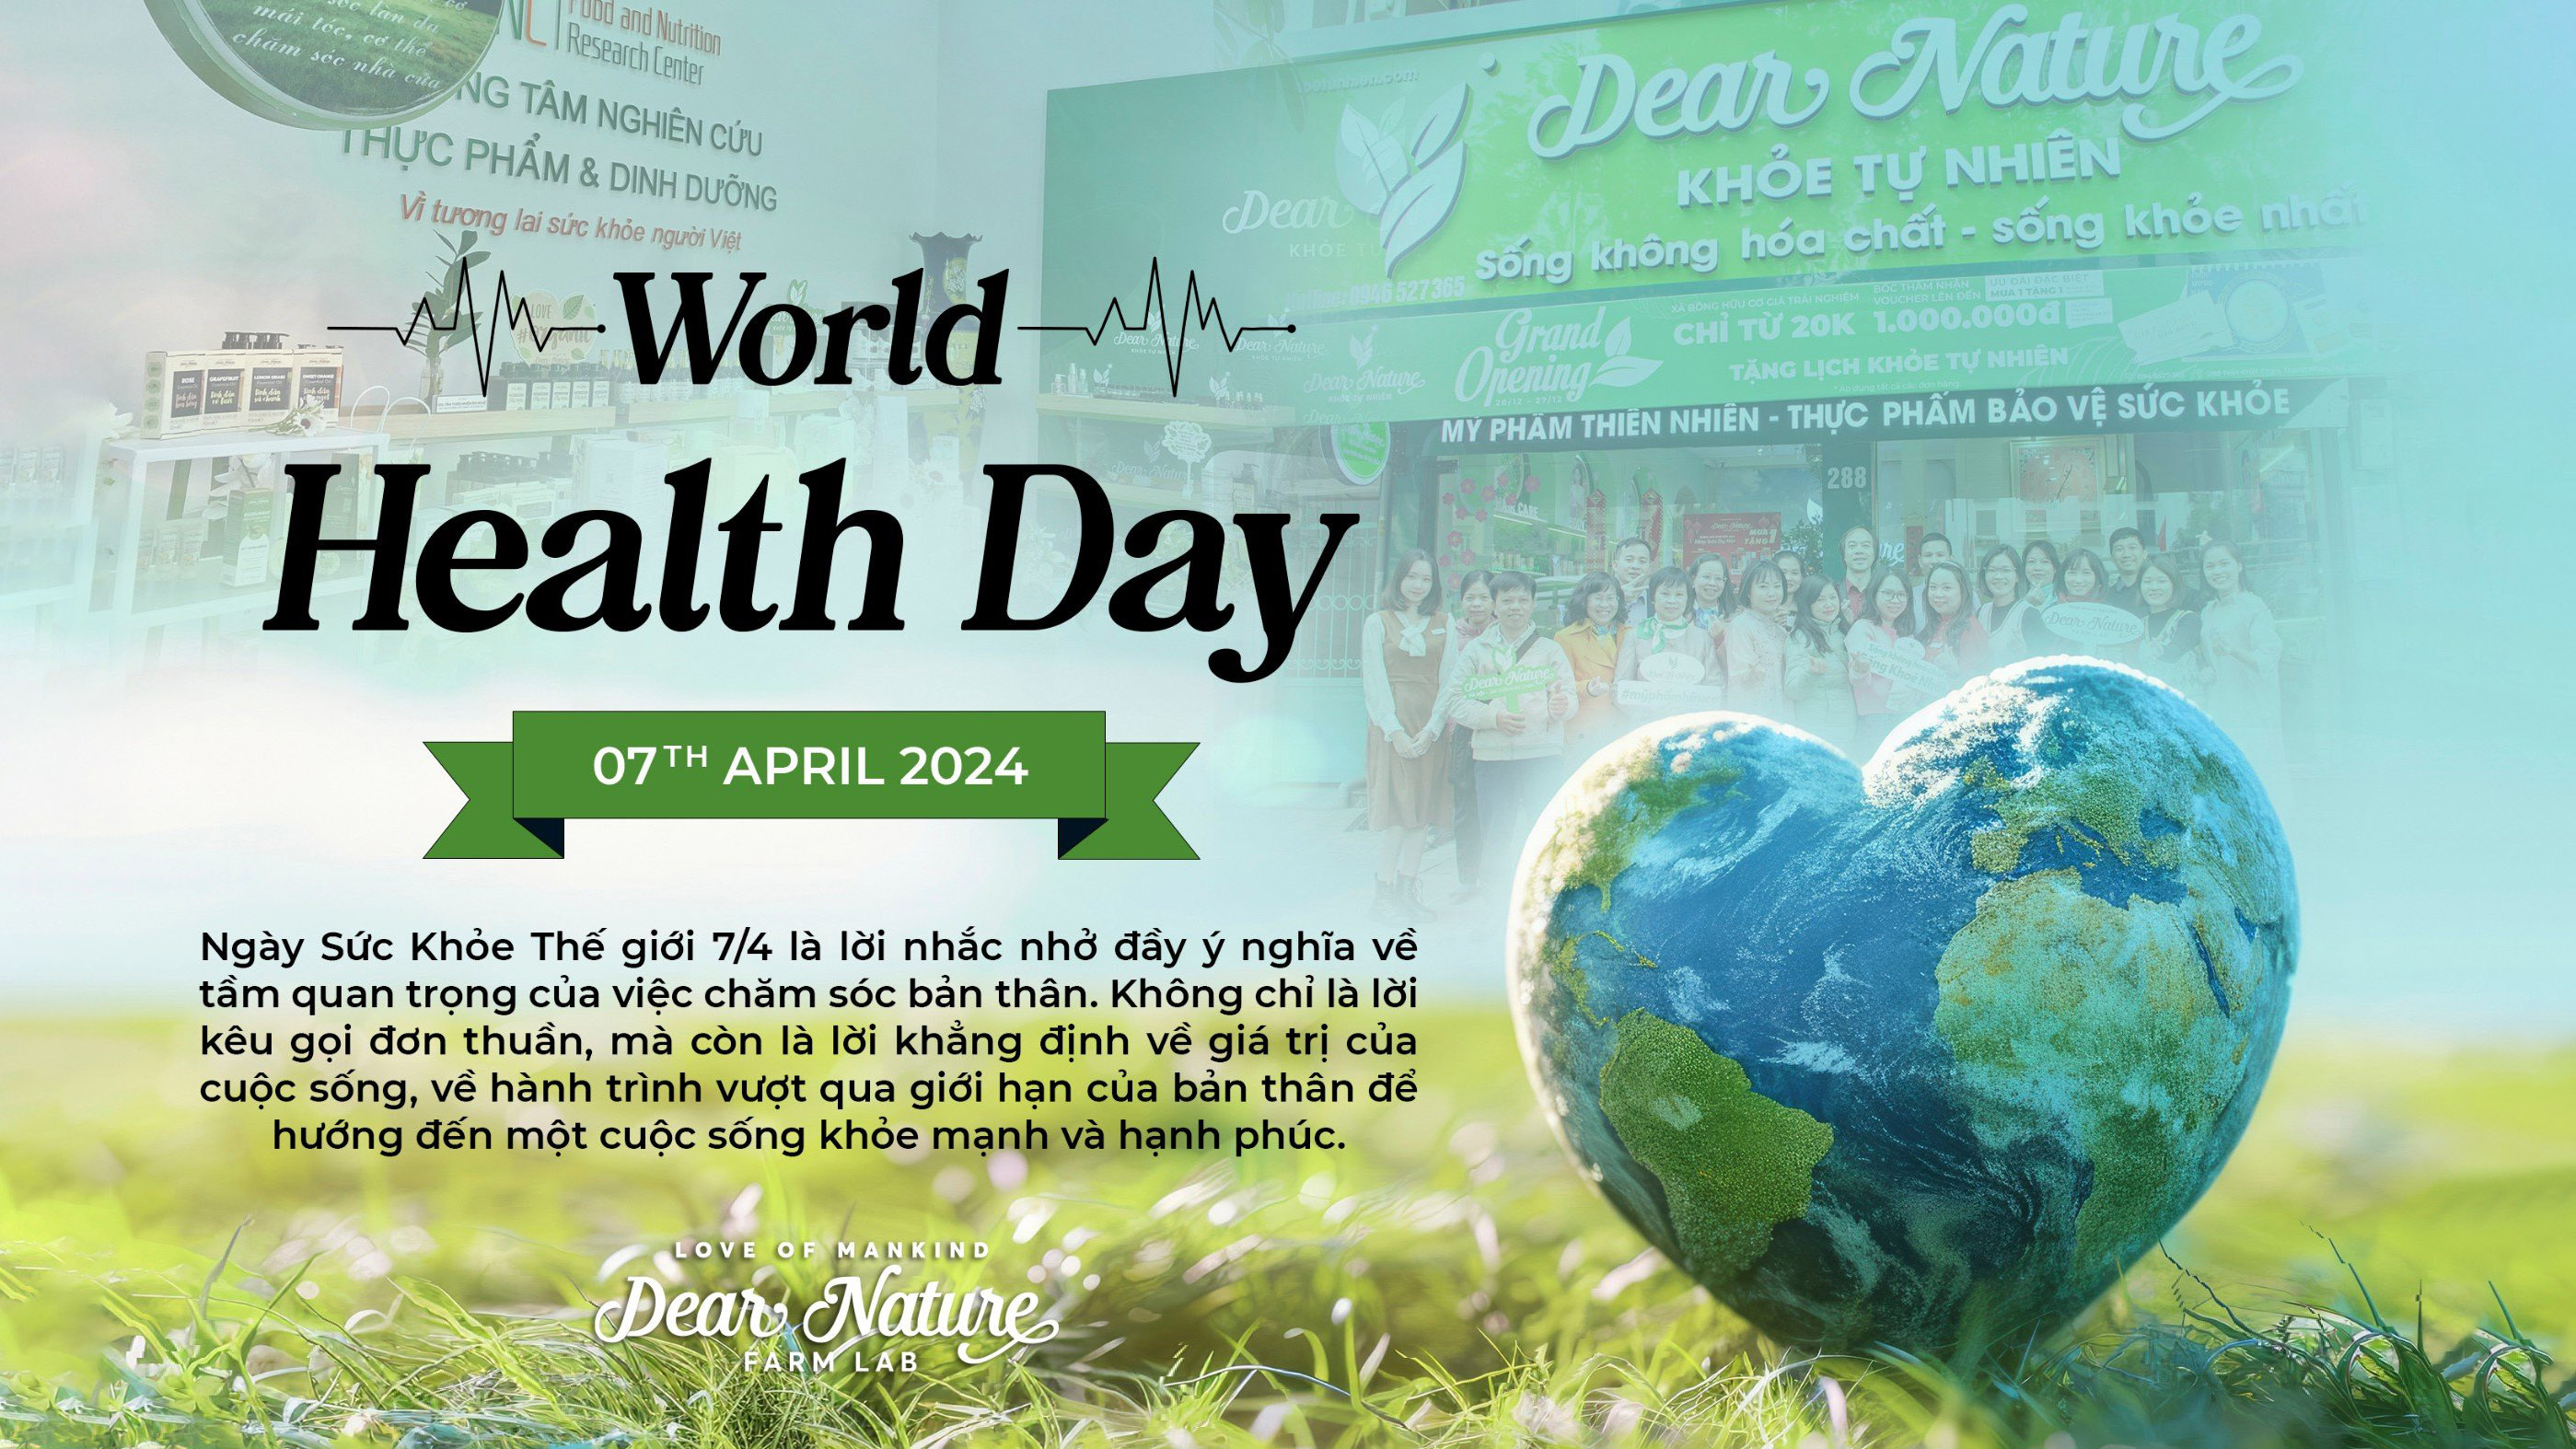 Chào mừng Ngày Sức khỏe Thế giới 07/04: Bí quyết sống khỏe cùng Dear Nature